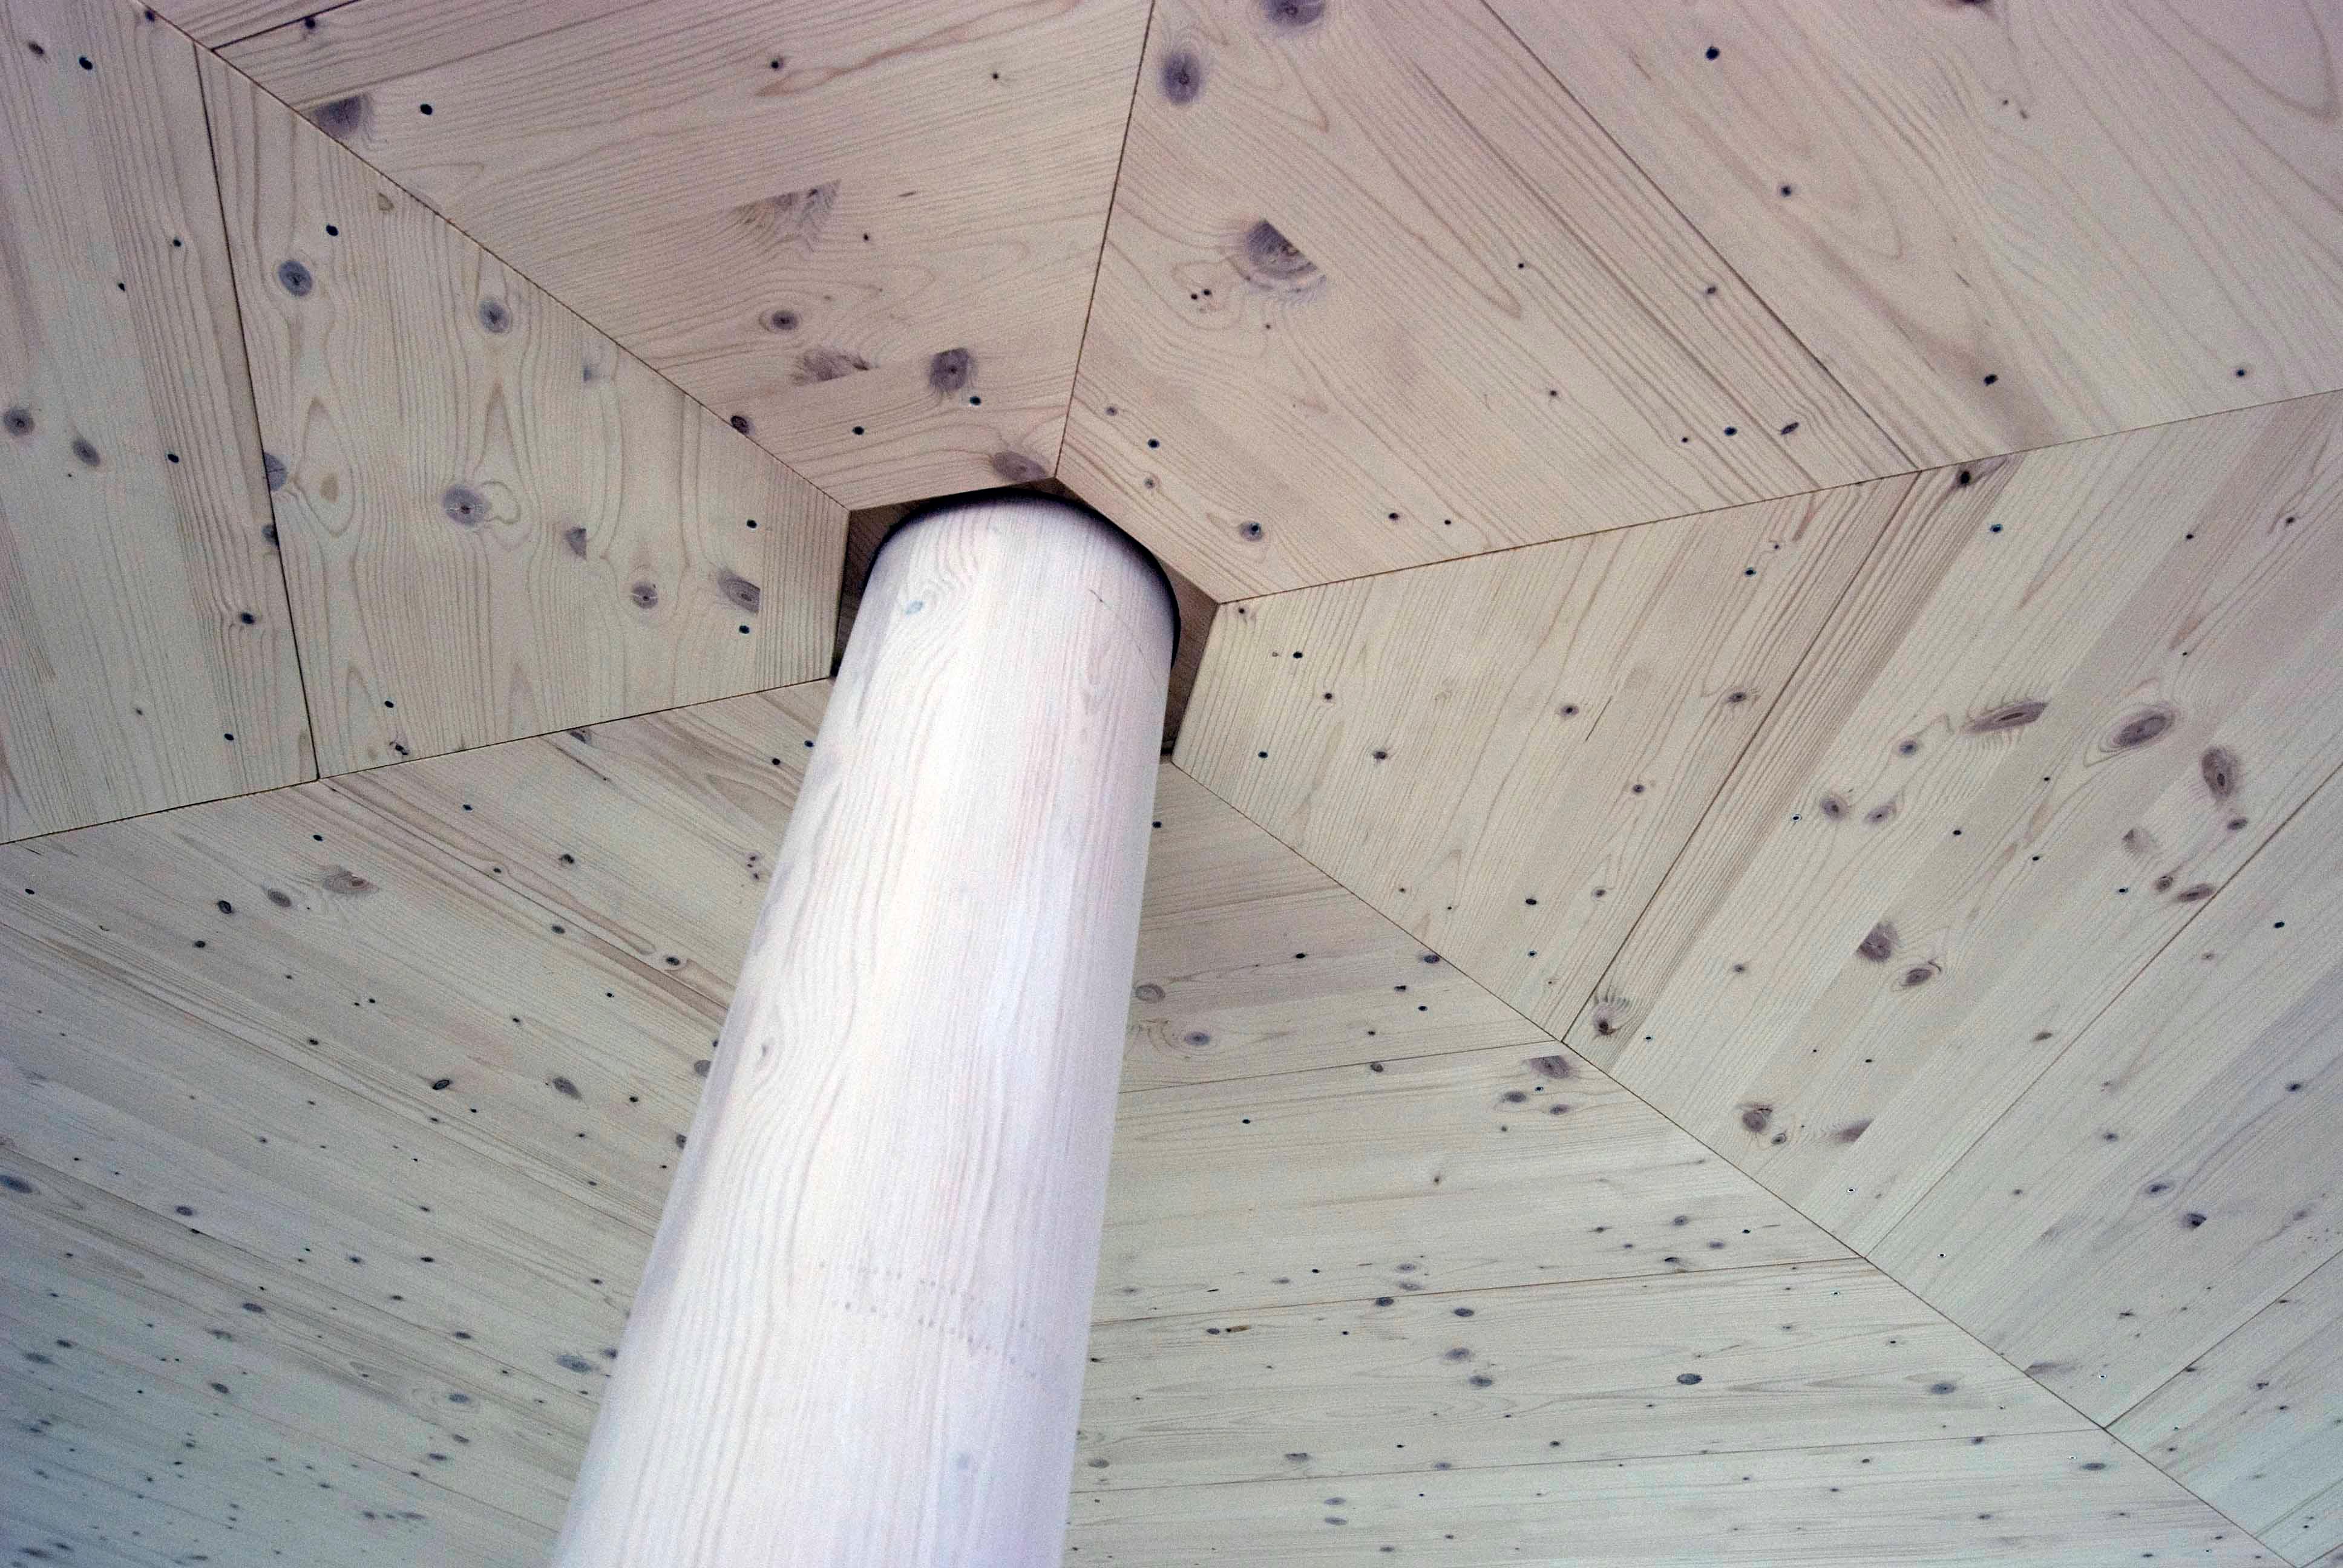  Architektur-Reportage Hessigkofen Sechseck Decke: Blick auf die Holzdecke mit Säule in der Mitte   